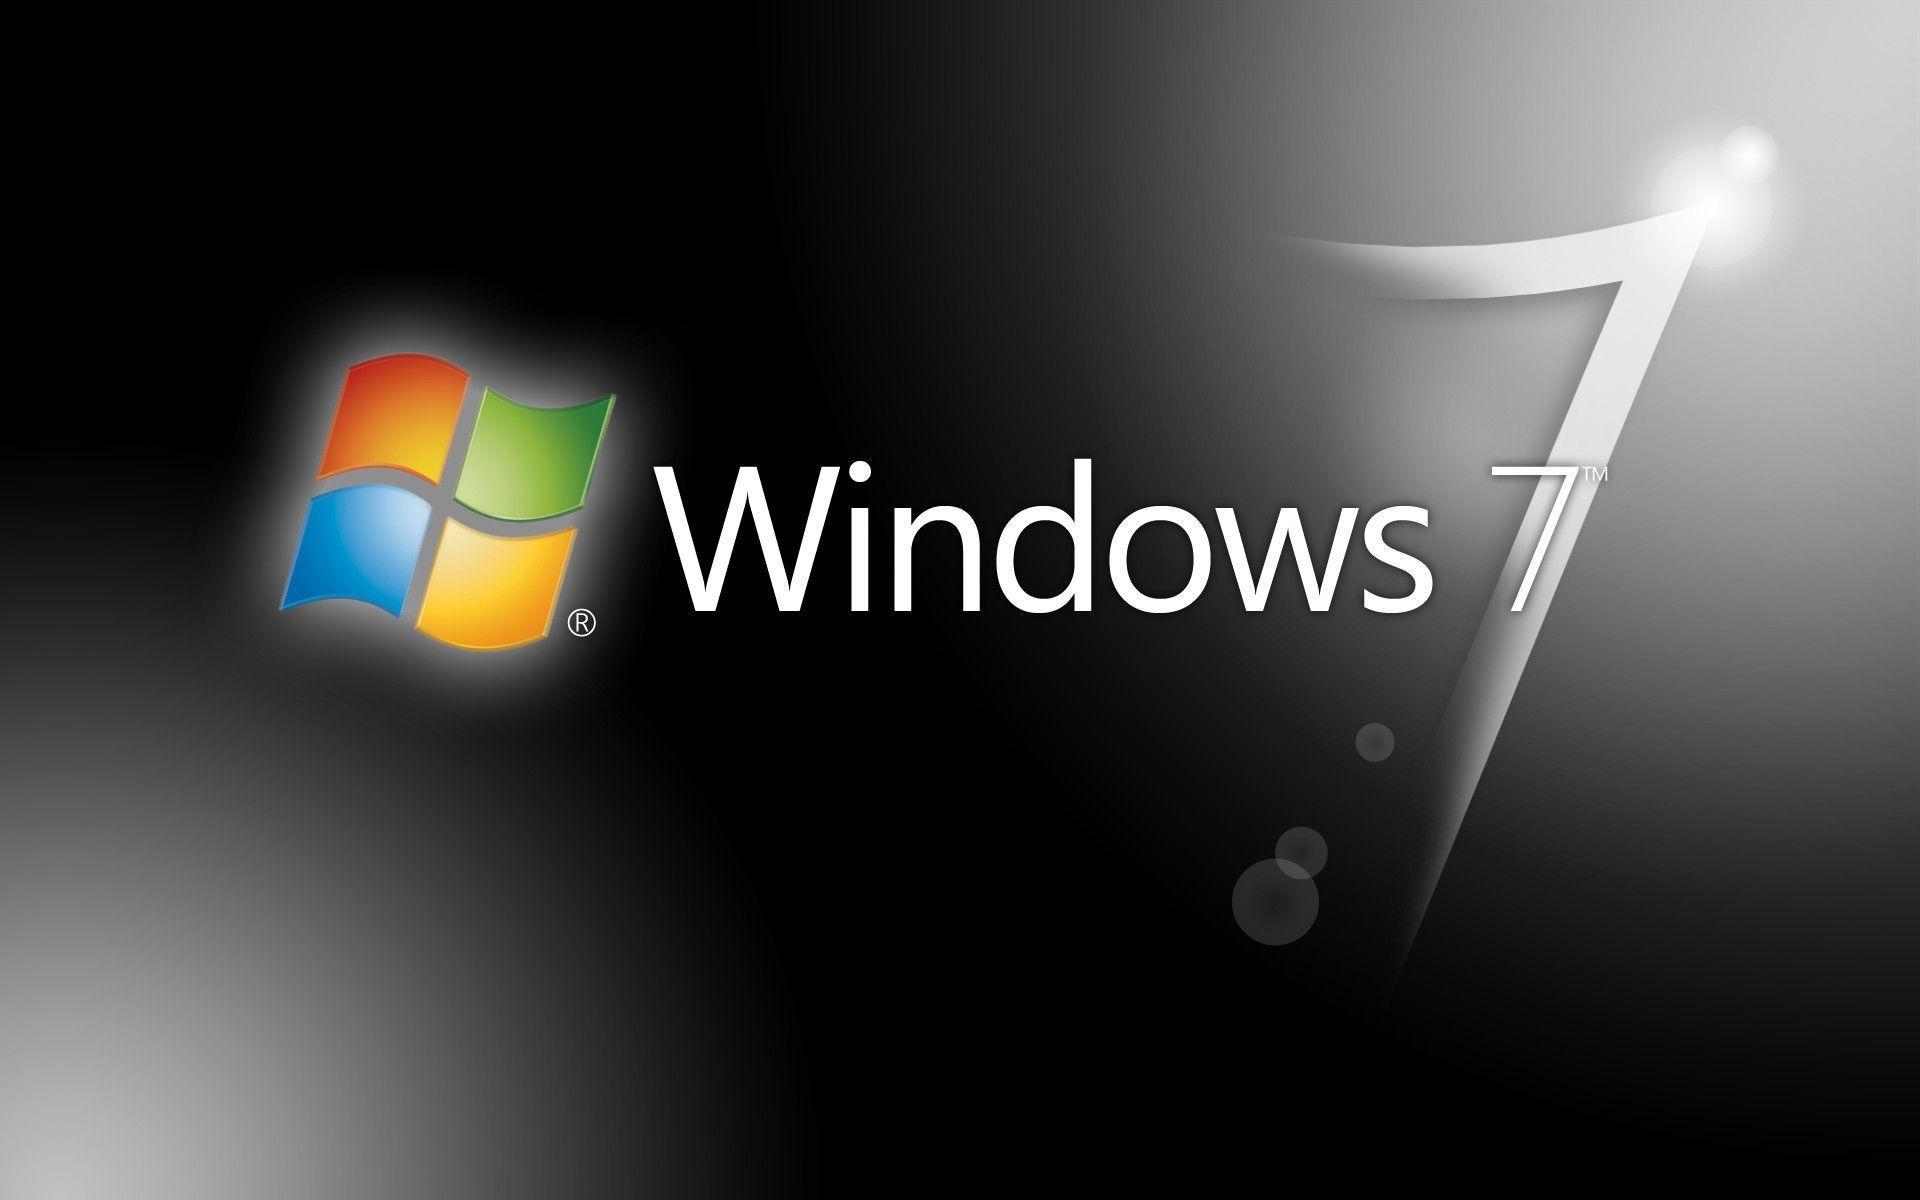 Đen - một màu sắc đẹp và thanh lịch, sẽ làm cho máy tính Windows 7 của bạn trở nên nổi bật hơn bao giờ hết. Hãy nhấp chuột vào hình nền máy tính Windows 7 đen và trải nghiệm sự khác biệt tuyệt vời mà nó mang lại!